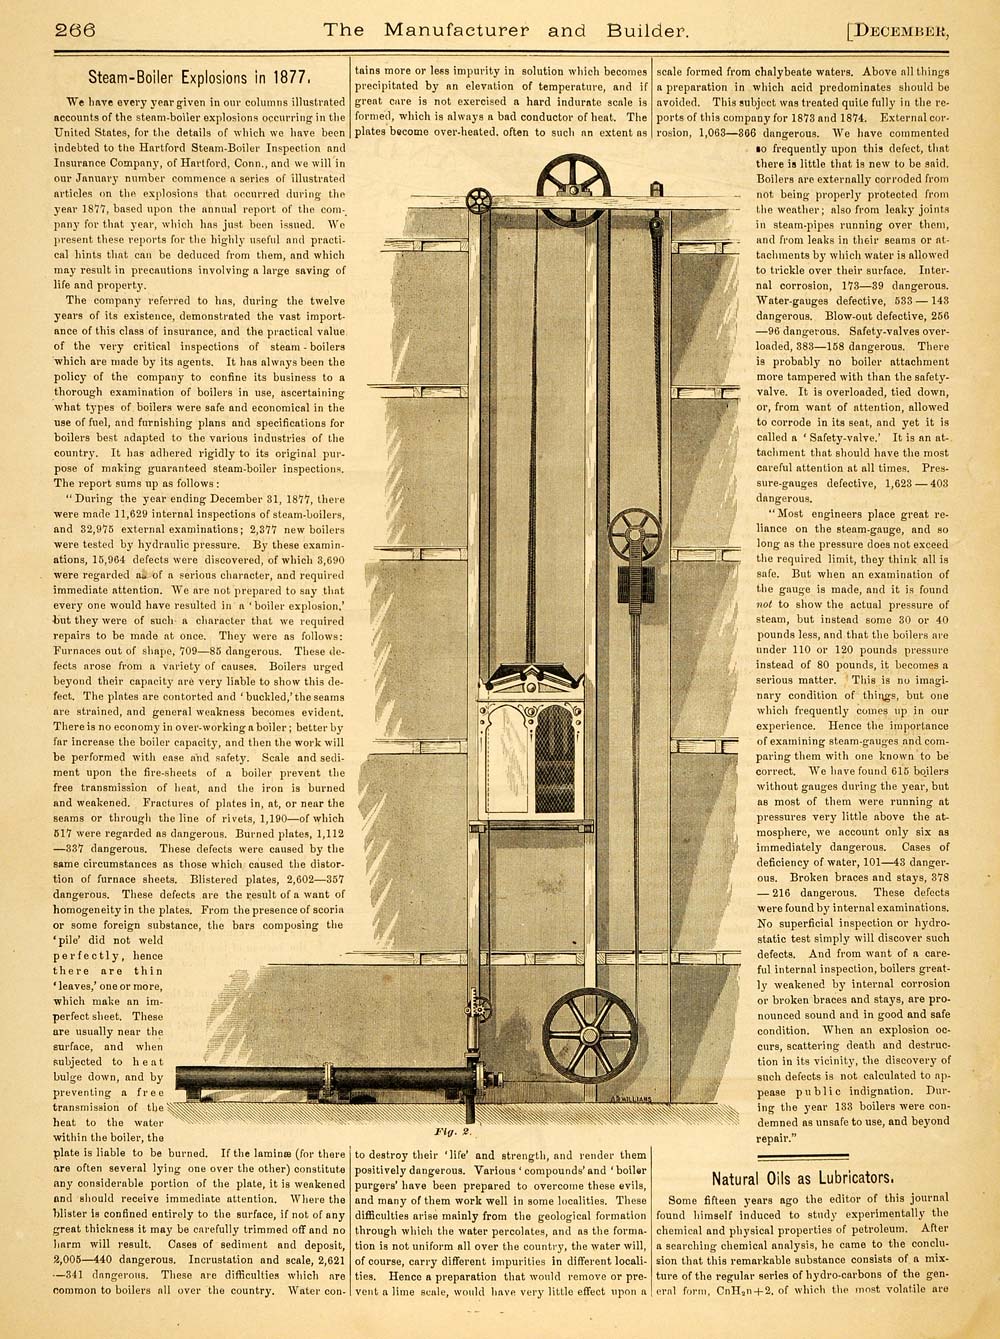 1878 Article Stebbins Hydraulic Elevators Burdon Iron Works Brooklyn NY MAB1